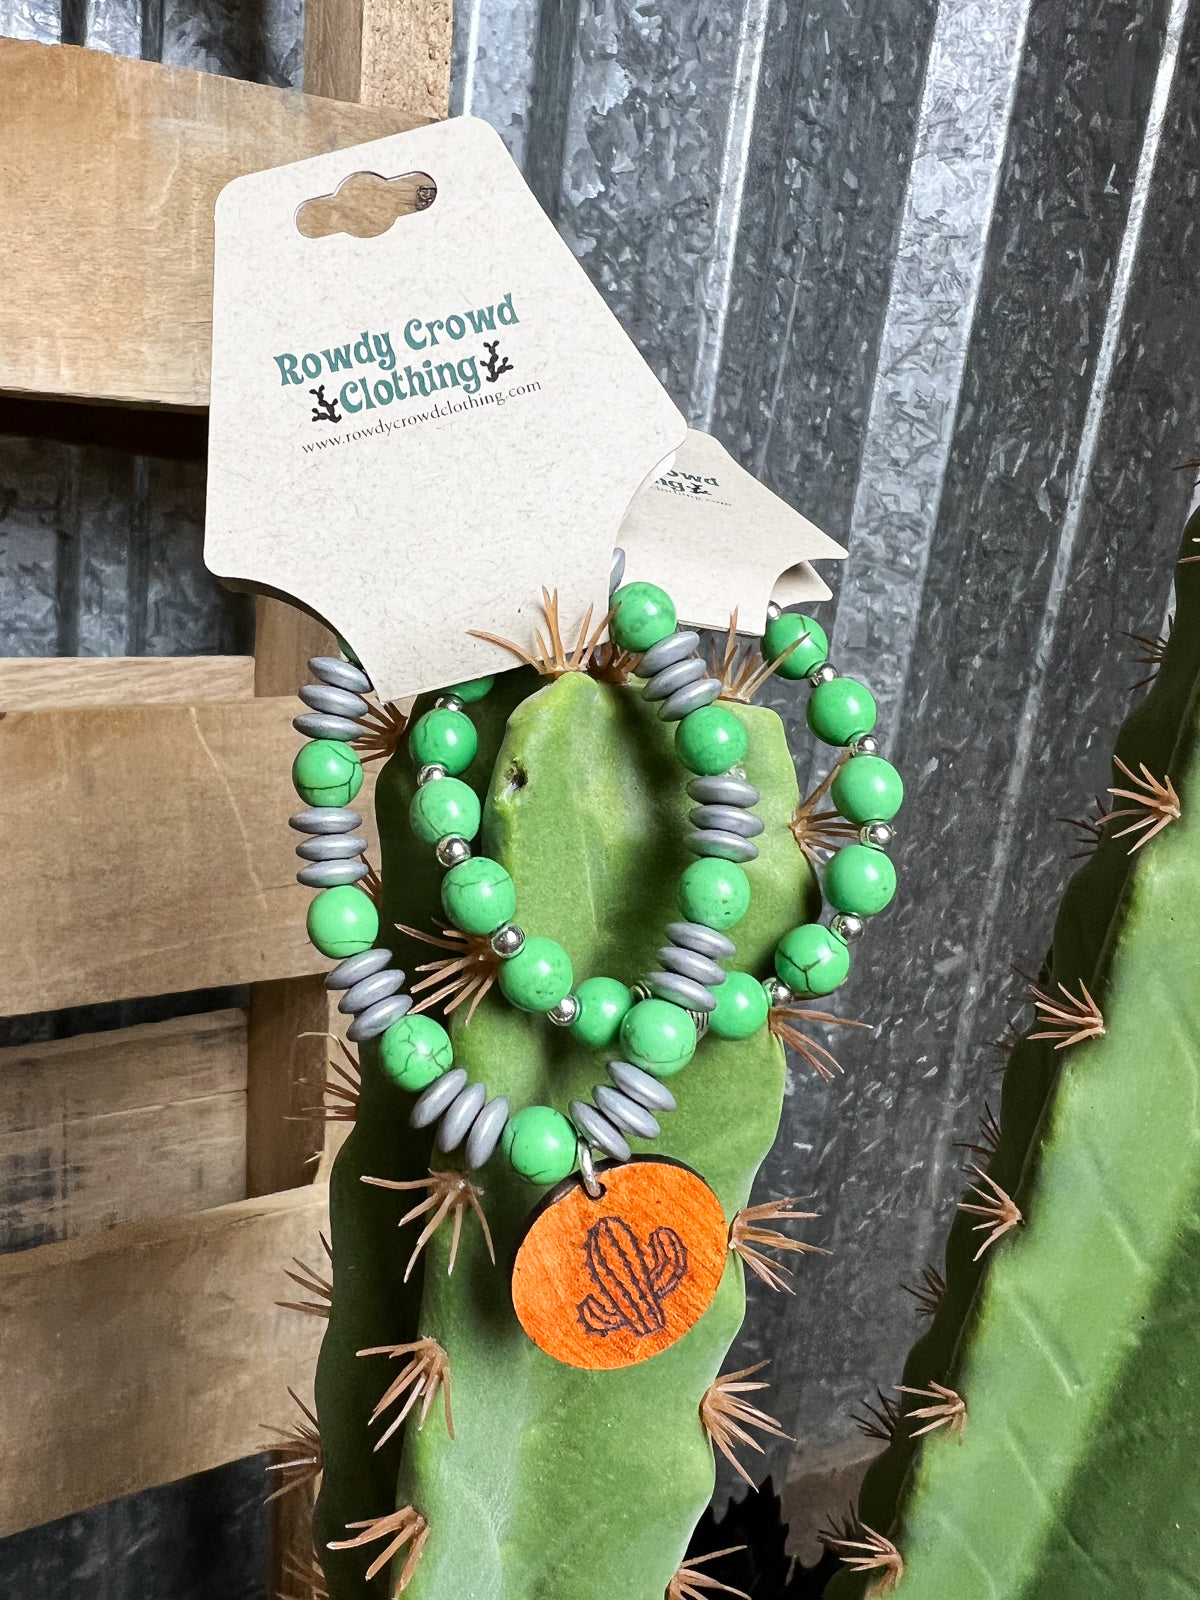 Four Leaf Clover Bracelet